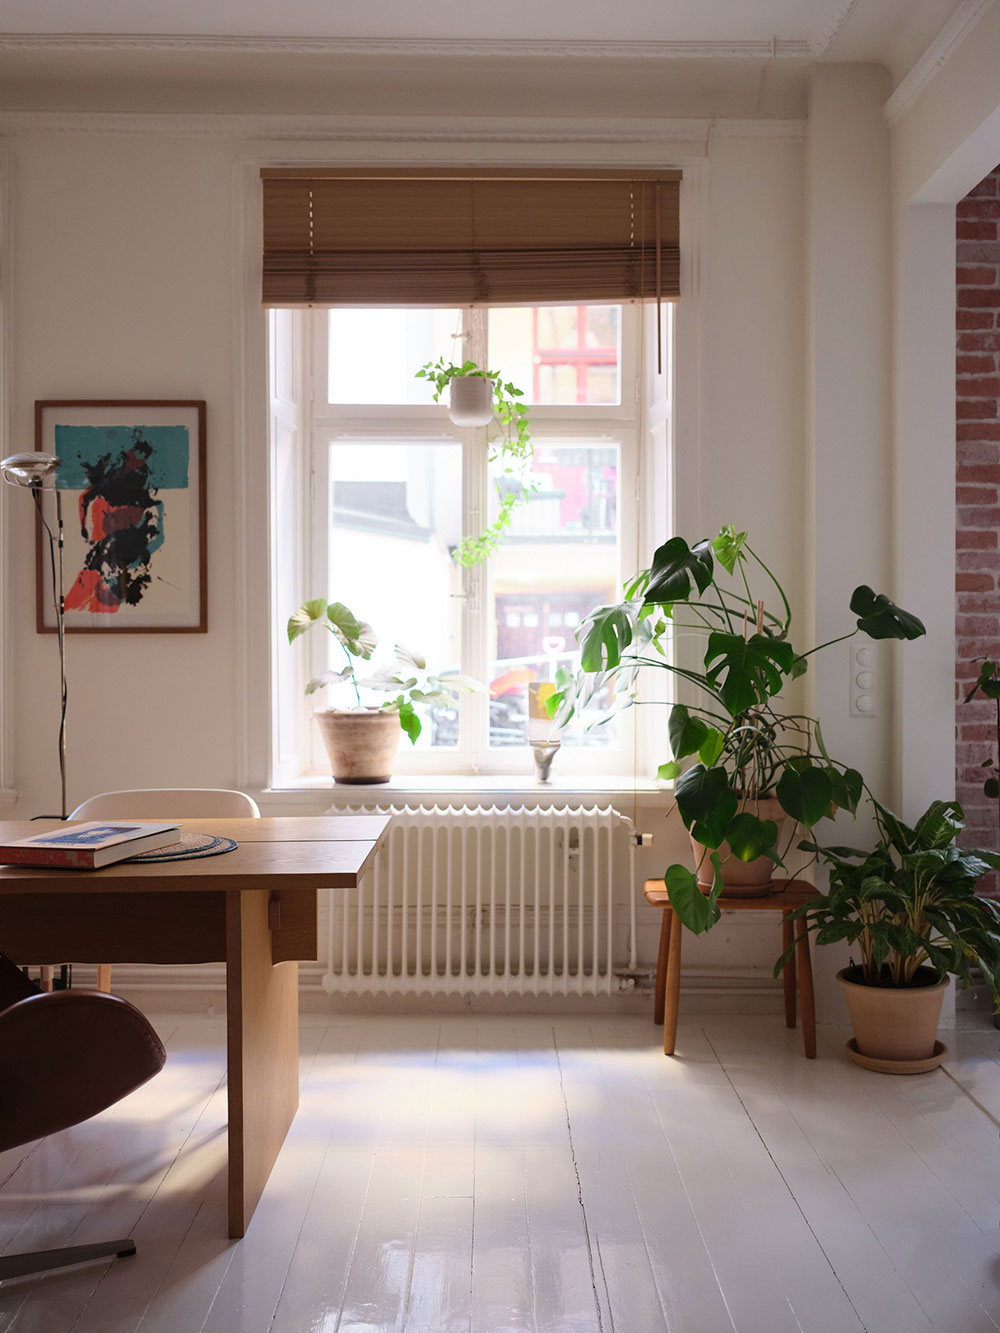 Причудливая мебель и офисный стол вместо обеденного: неожиданный интерьер в Стокгольме (49 кв. м)